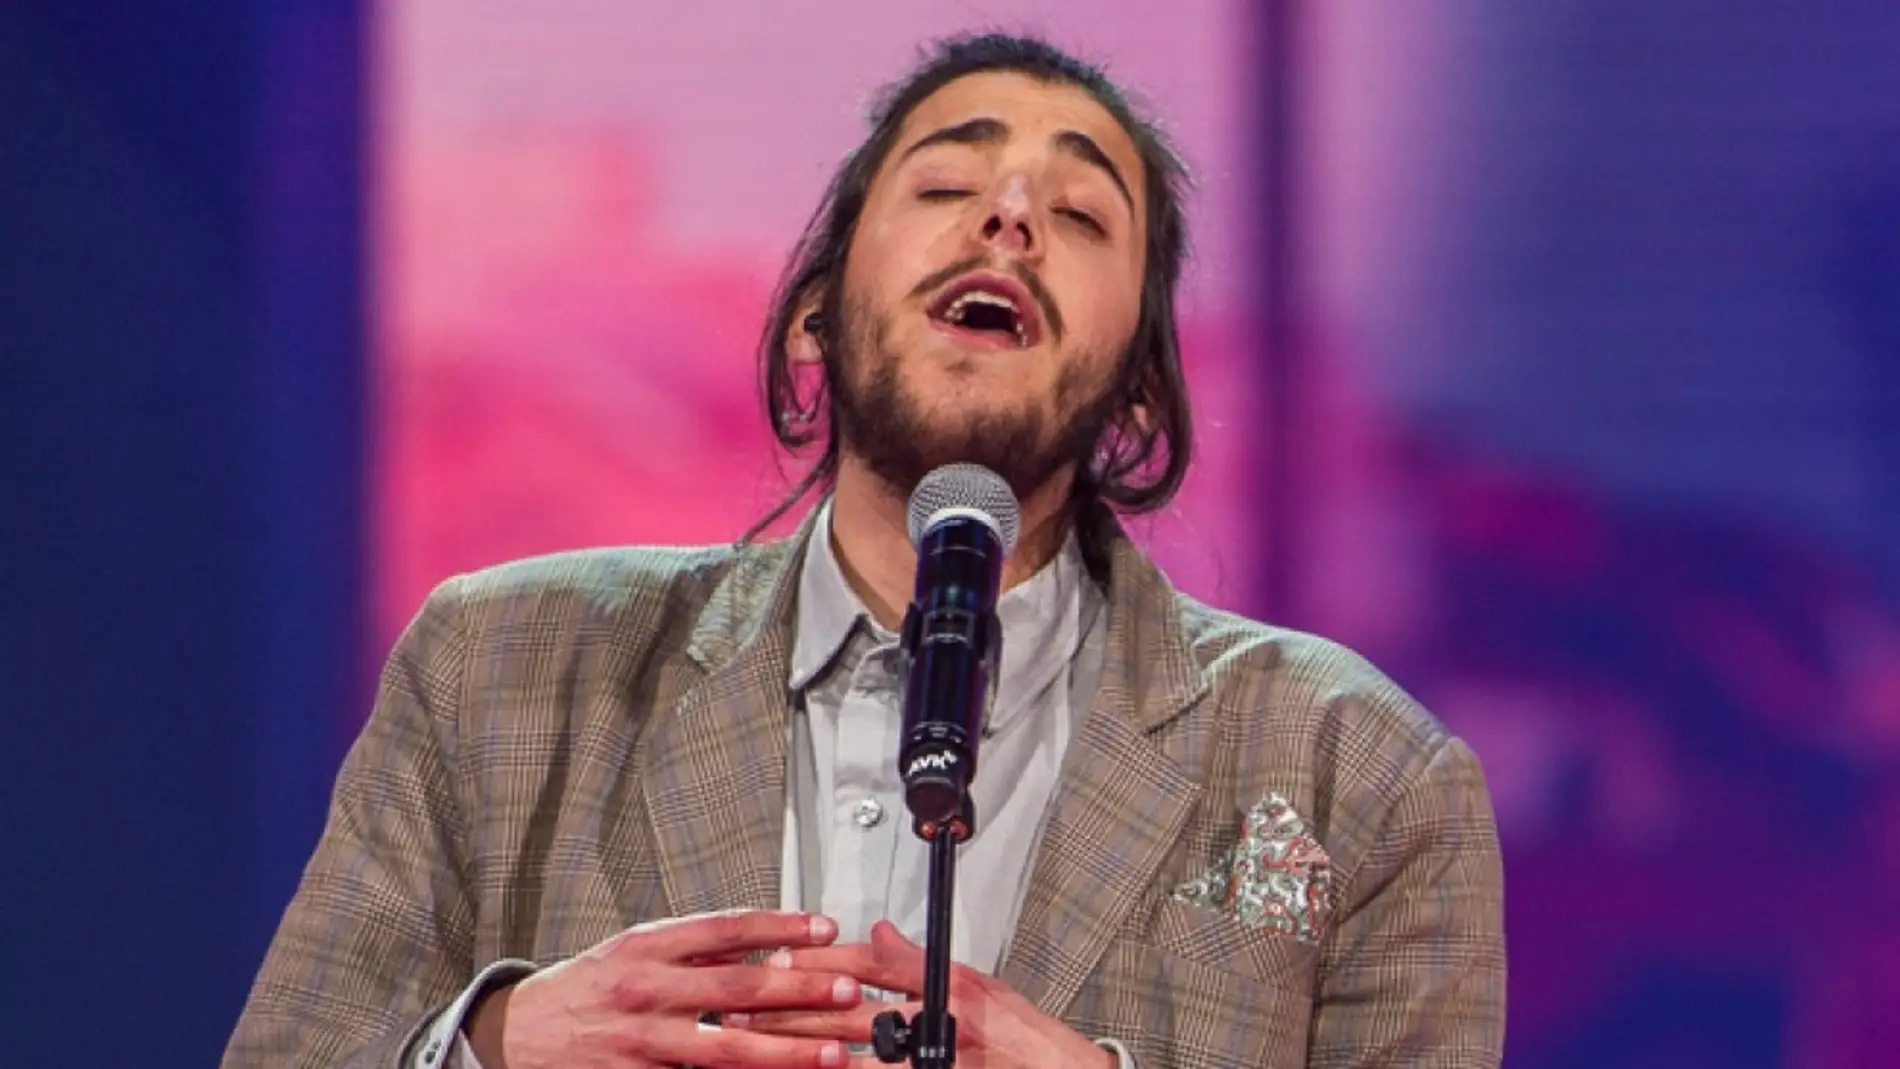 Salvador Sobral representa a Portugal en Eurovisión